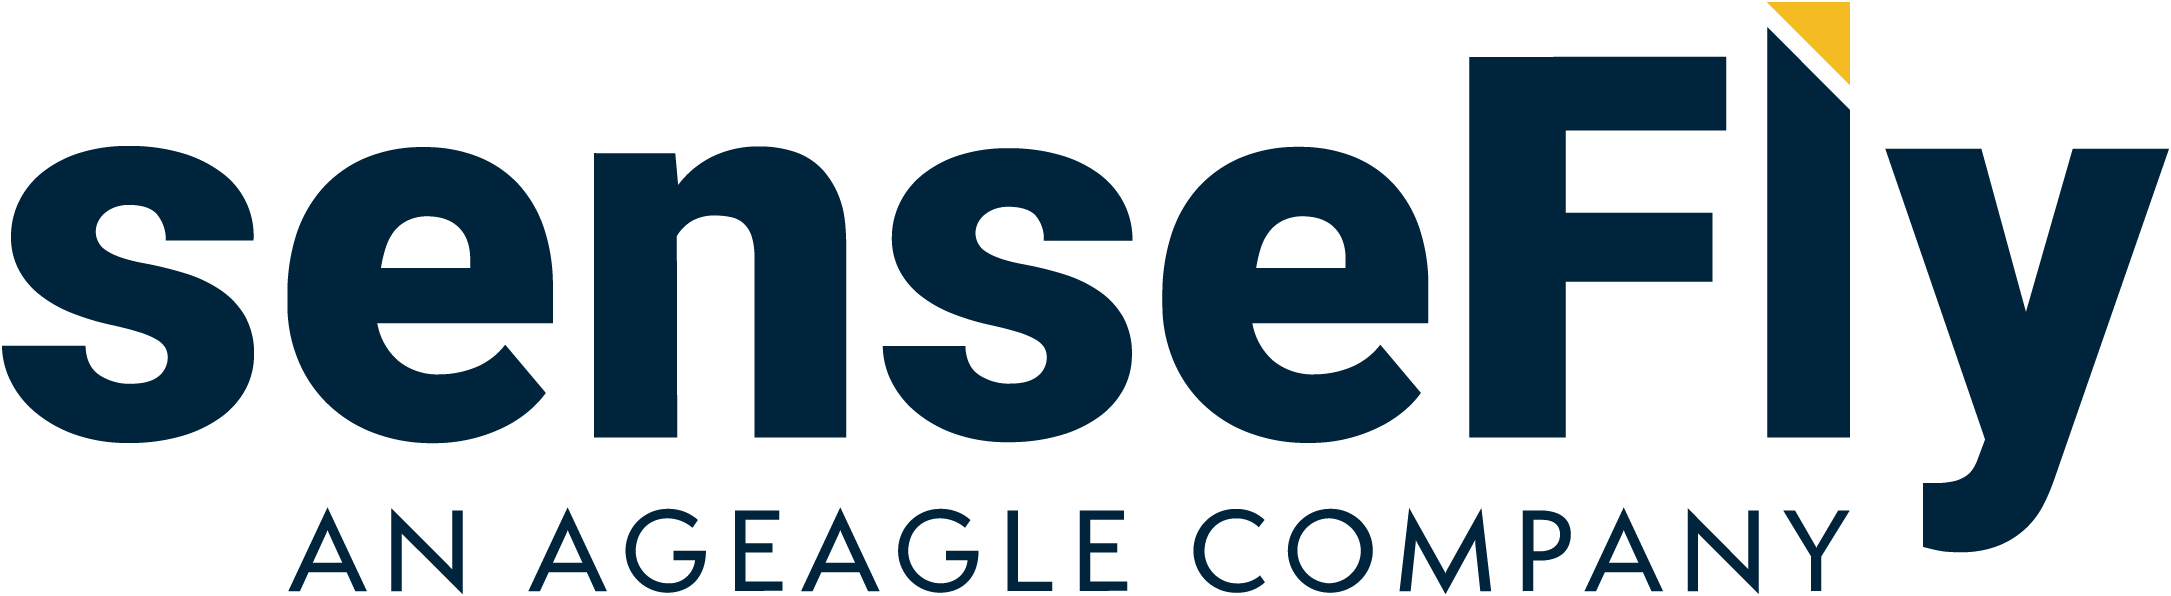 primary-logo-senseFly-color-AgEagle-rgb